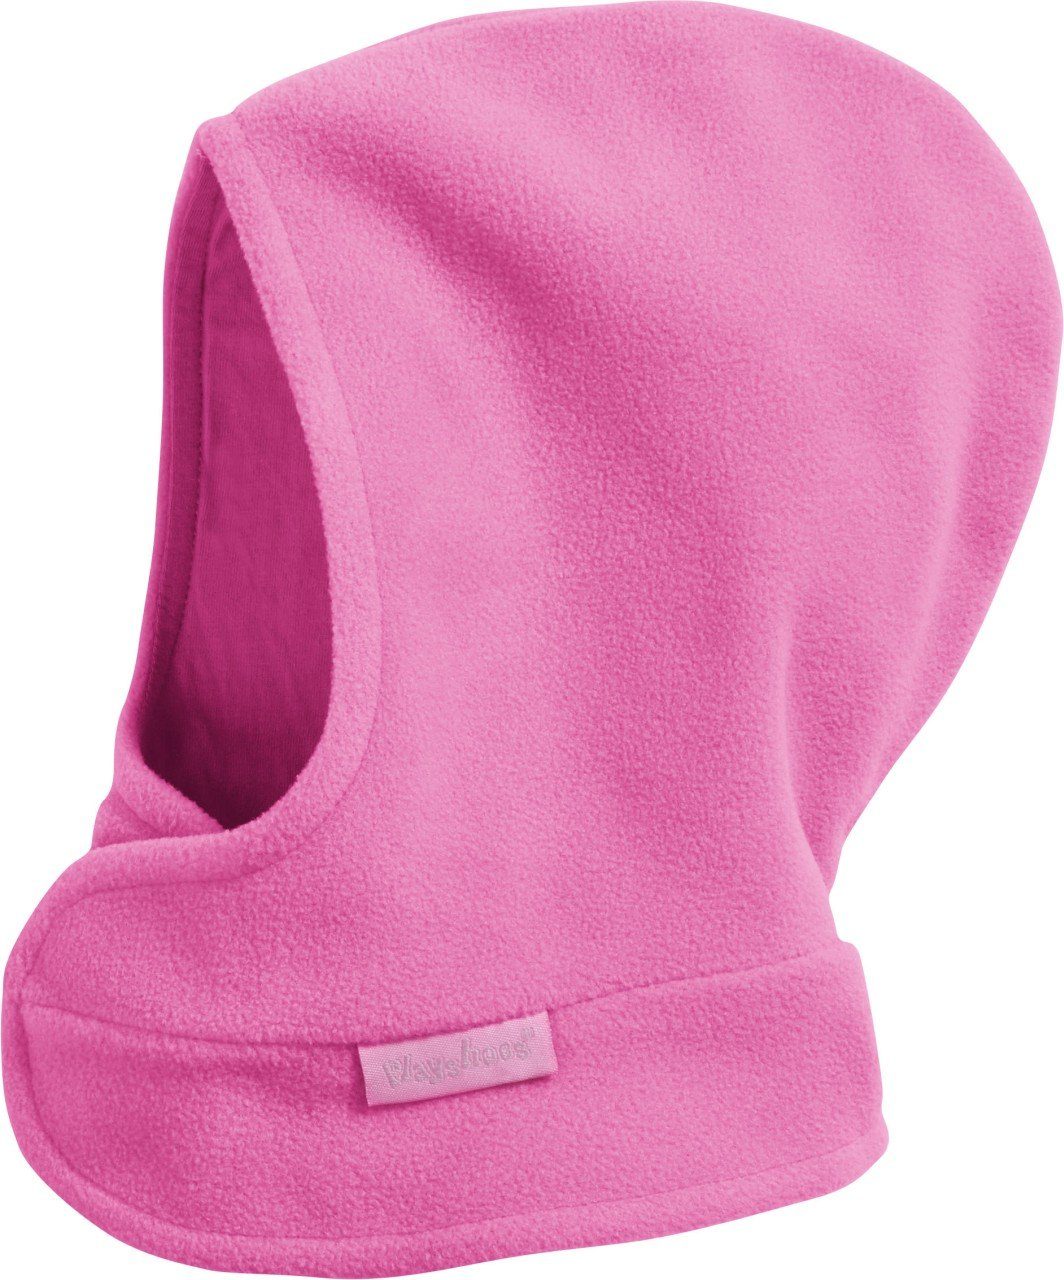 Playshoes Schlupfmütze Fleece-Schalmütze pink mit Klettverschluß